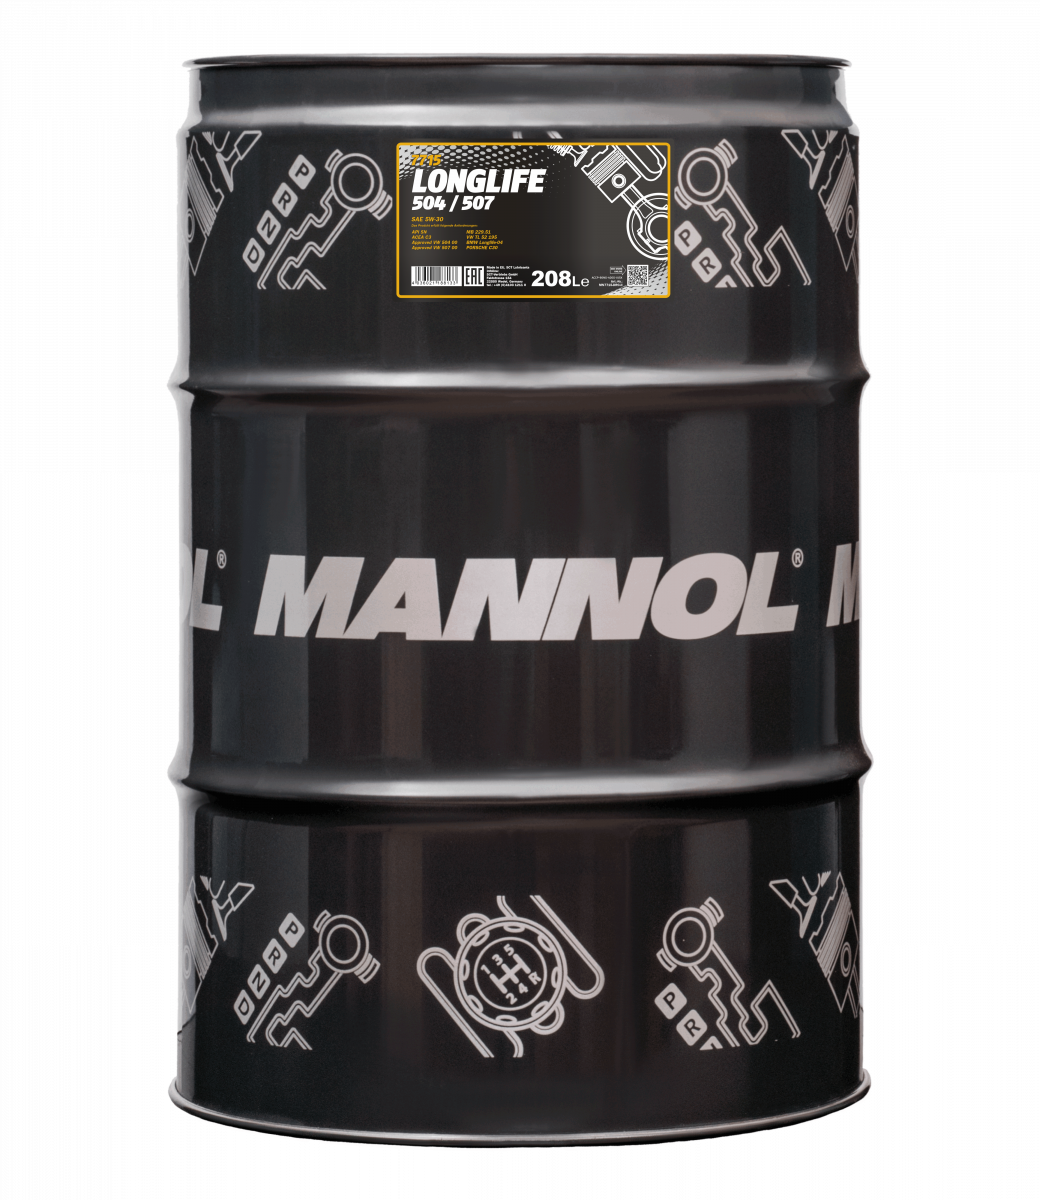 4 x 208 Liter drum Mannol 5W-30 7715 LONGLIFE 504/507